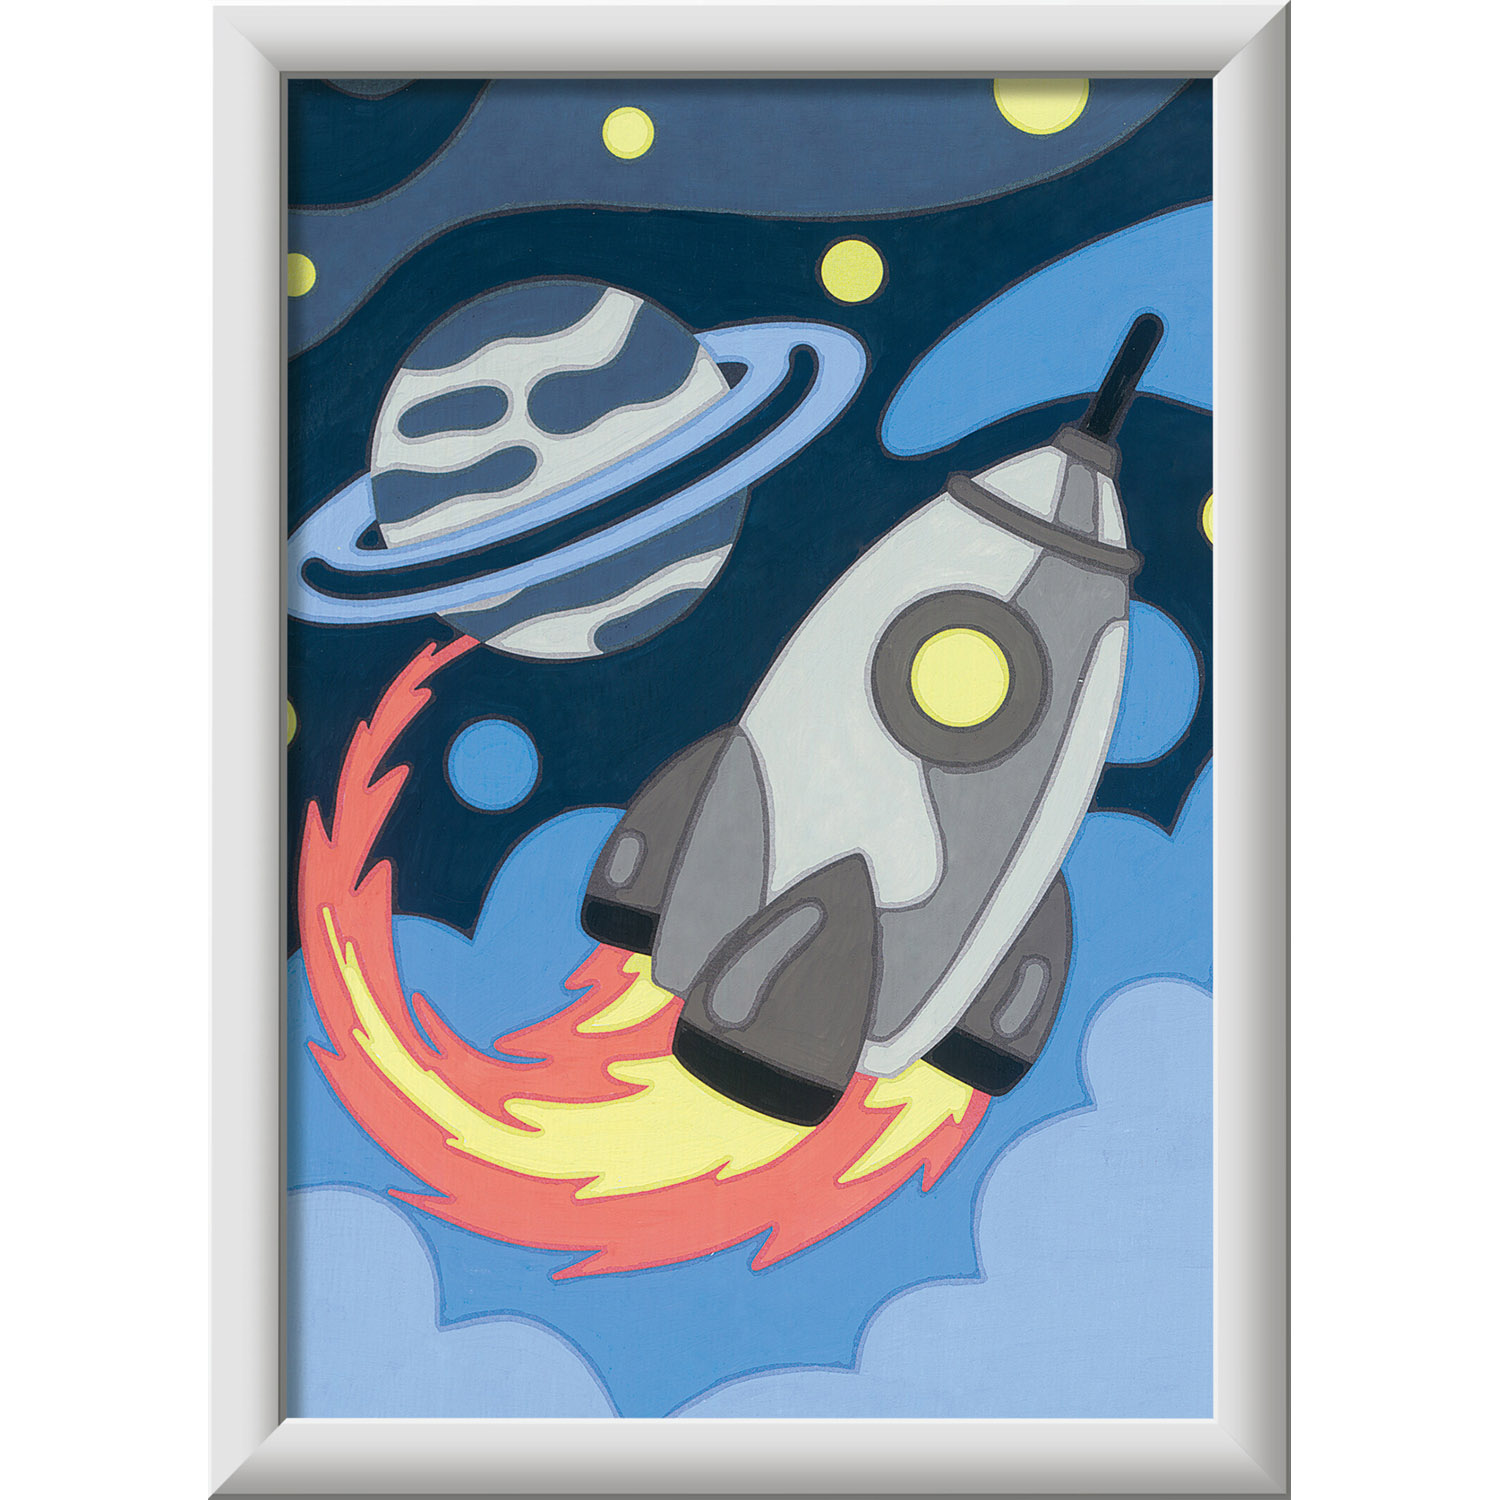 Creart Avventure nello spazio, Serie E, Kit per dipingere con i numeri - Creart